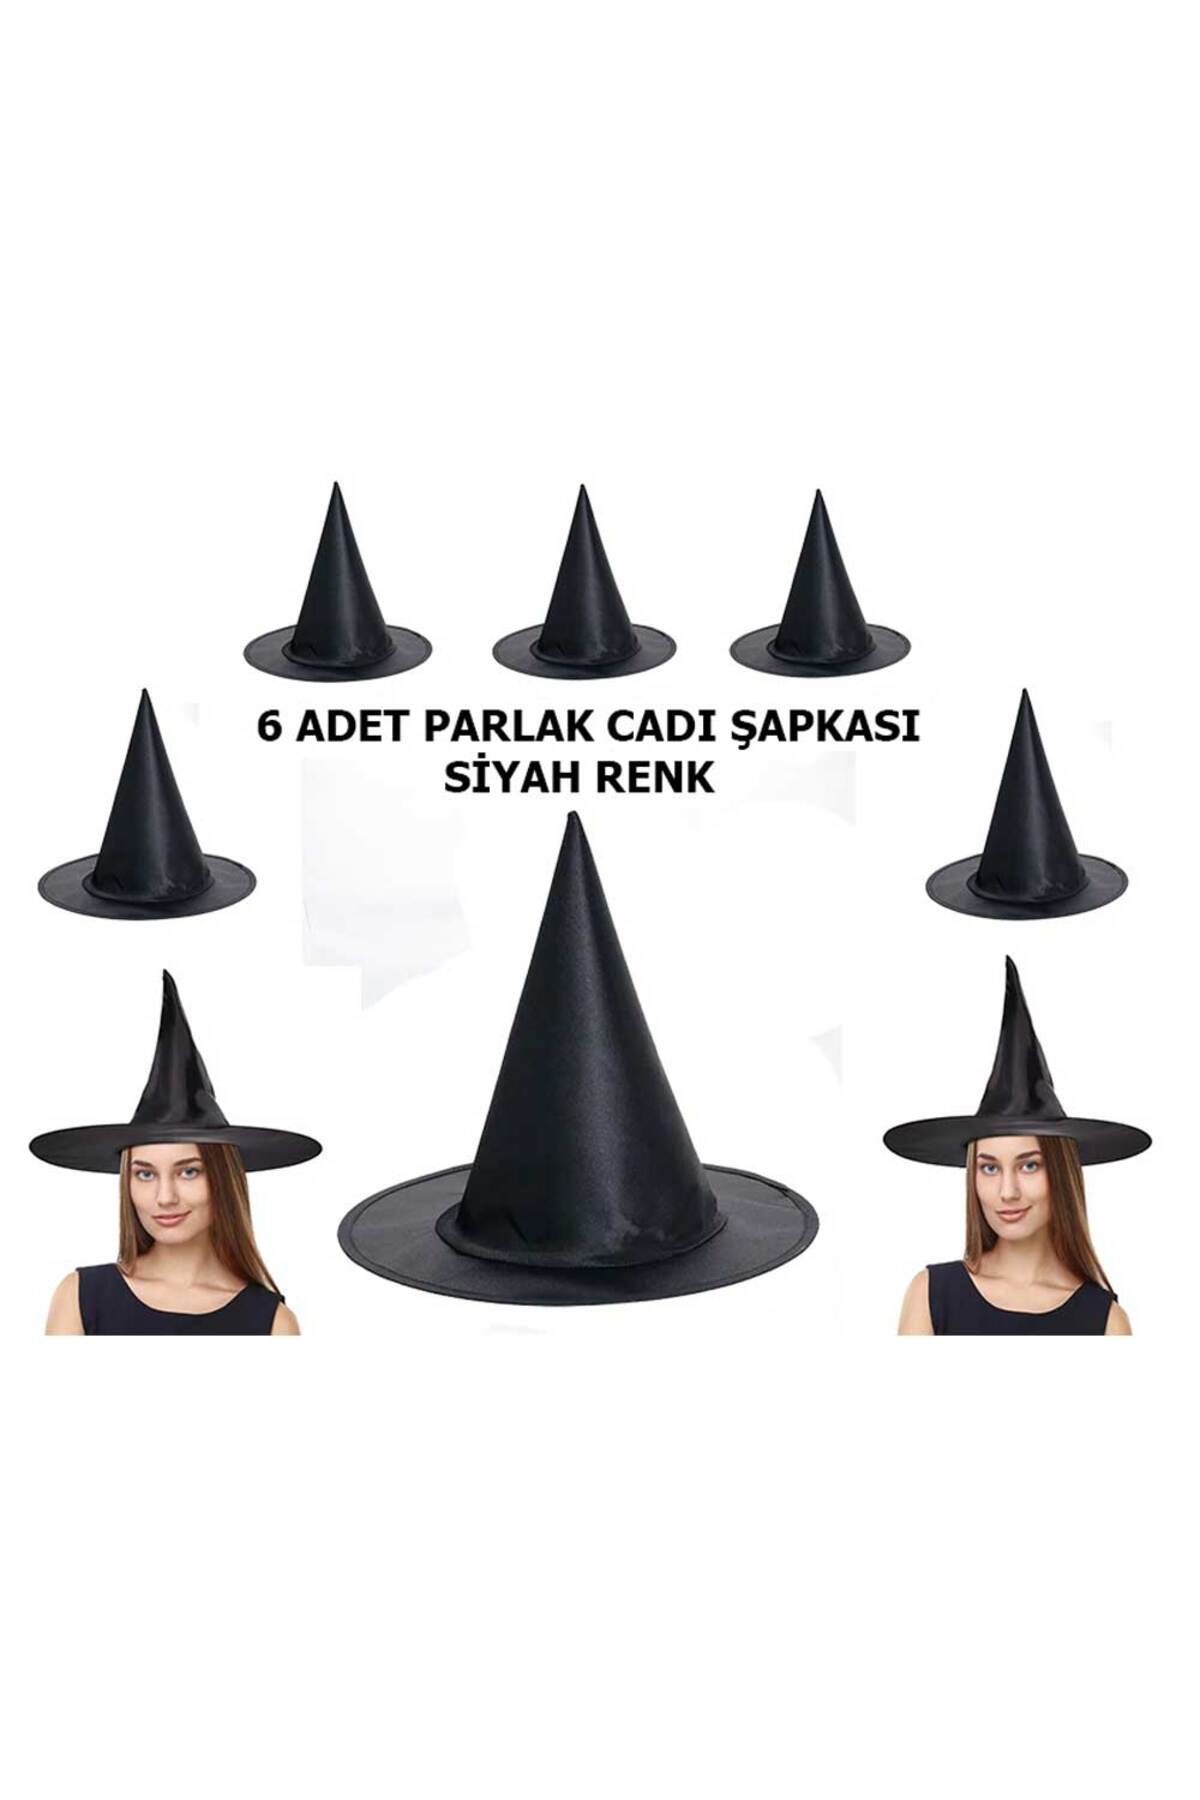 Skygo Halloween Siyah Renk Parlak Dralon Cadı Şapkası Yetişkin ve Çocuk Uyumlu 6 Adet